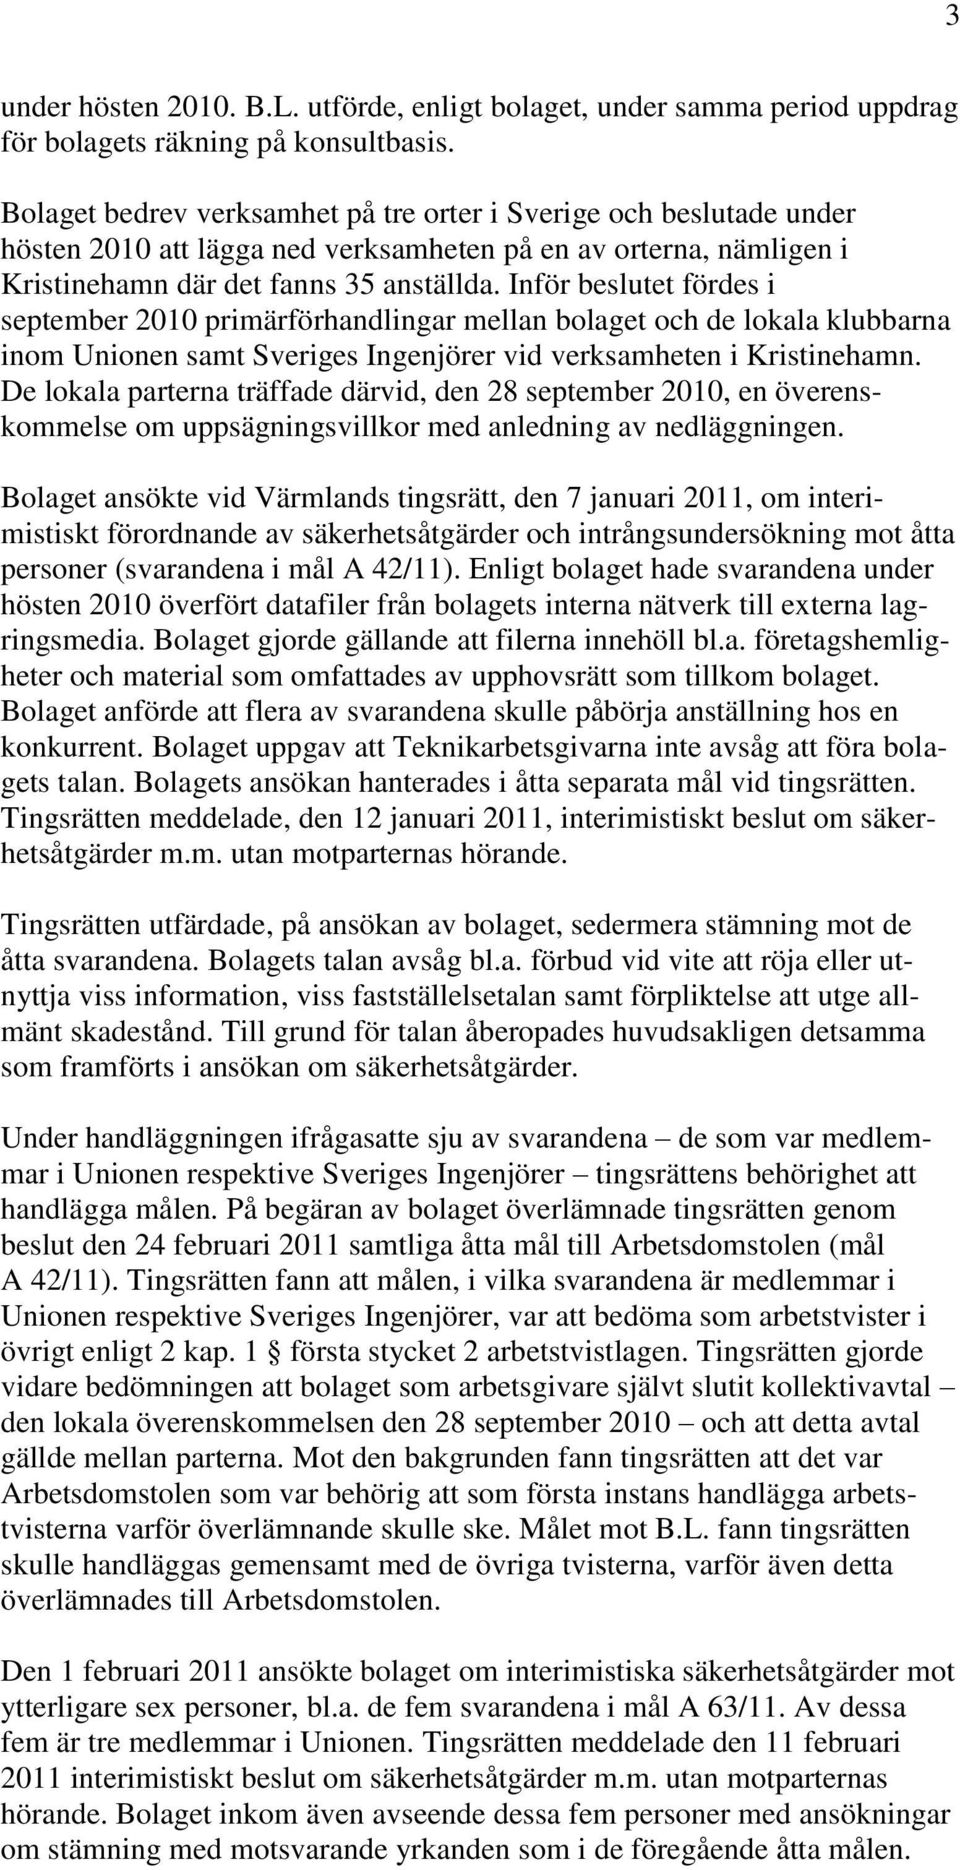 Inför beslutet fördes i september 2010 primärförhandlingar mellan bolaget och de lokala klubbarna inom Unionen samt Sveriges Ingenjörer vid verksamheten i Kristinehamn.